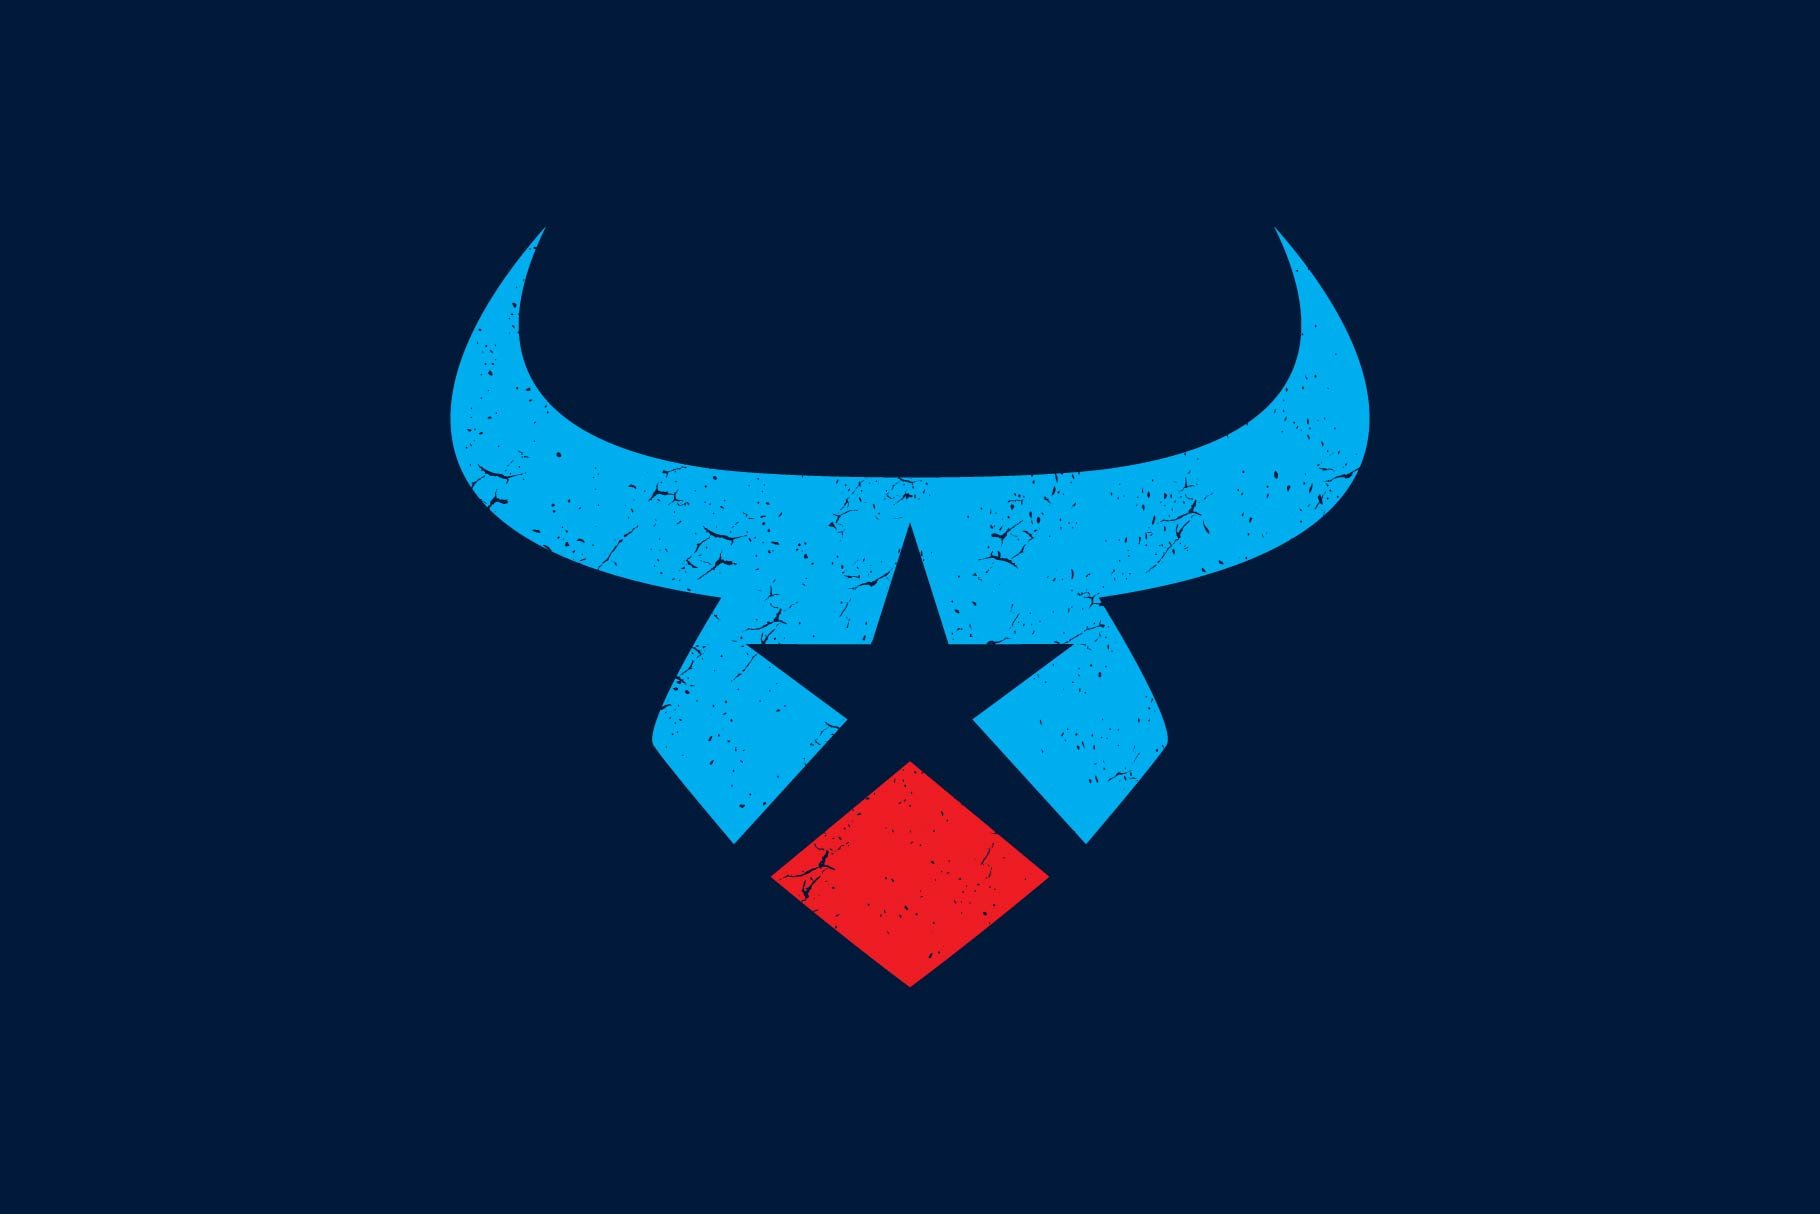 bull star logo cover image.